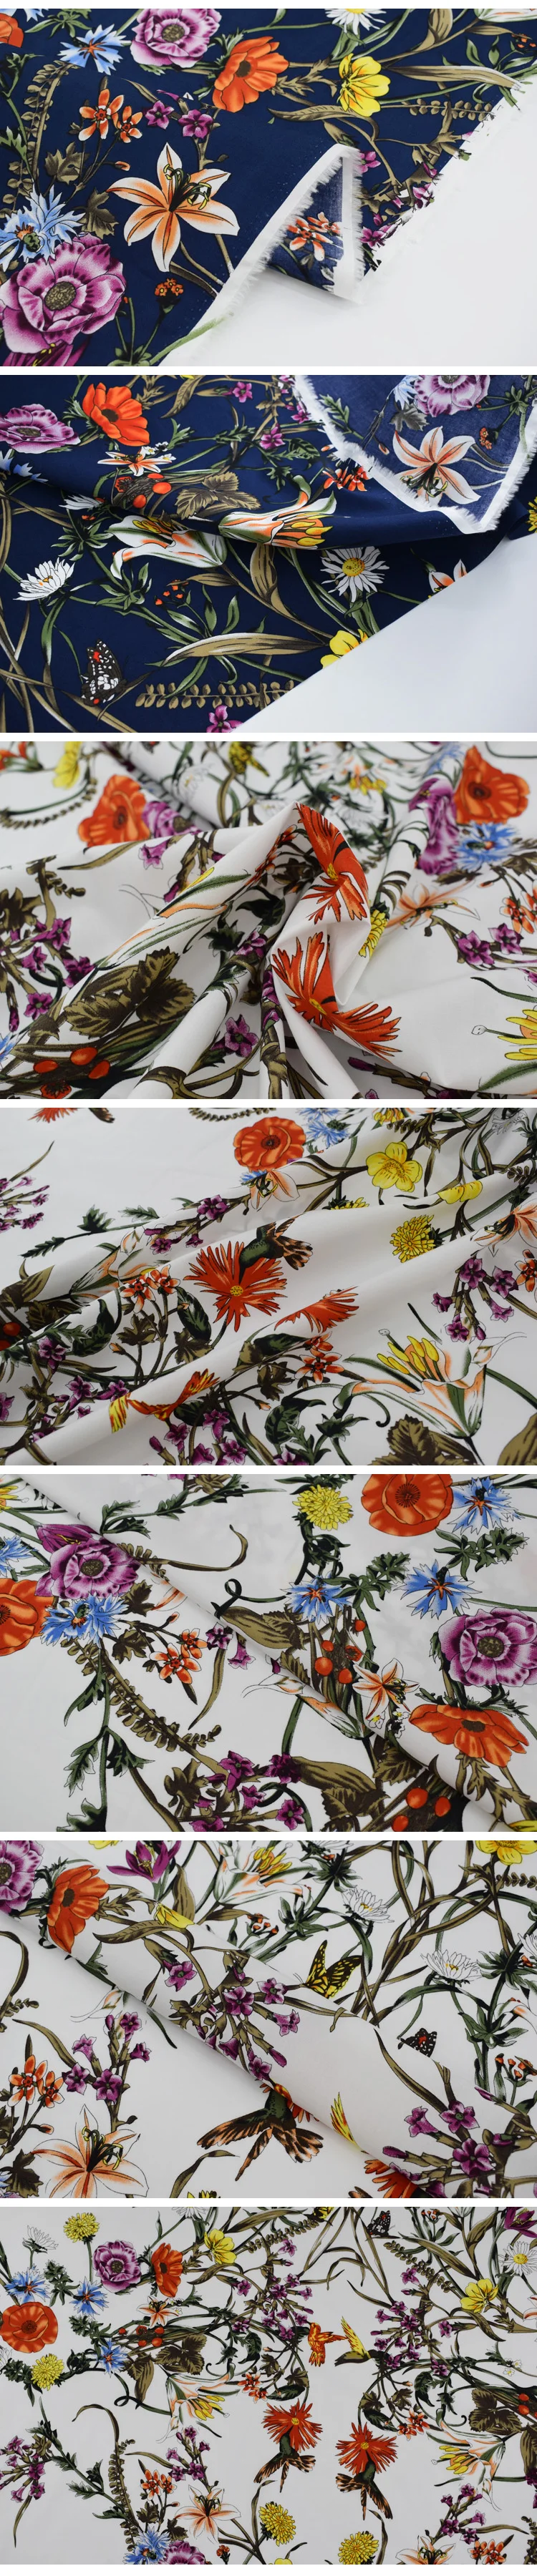 Сельский ветер цветы цветут реактивной окраски Чистый хлопок ткань для платья рубашки tissus au метр tissu telas tecido потертый шик DIY